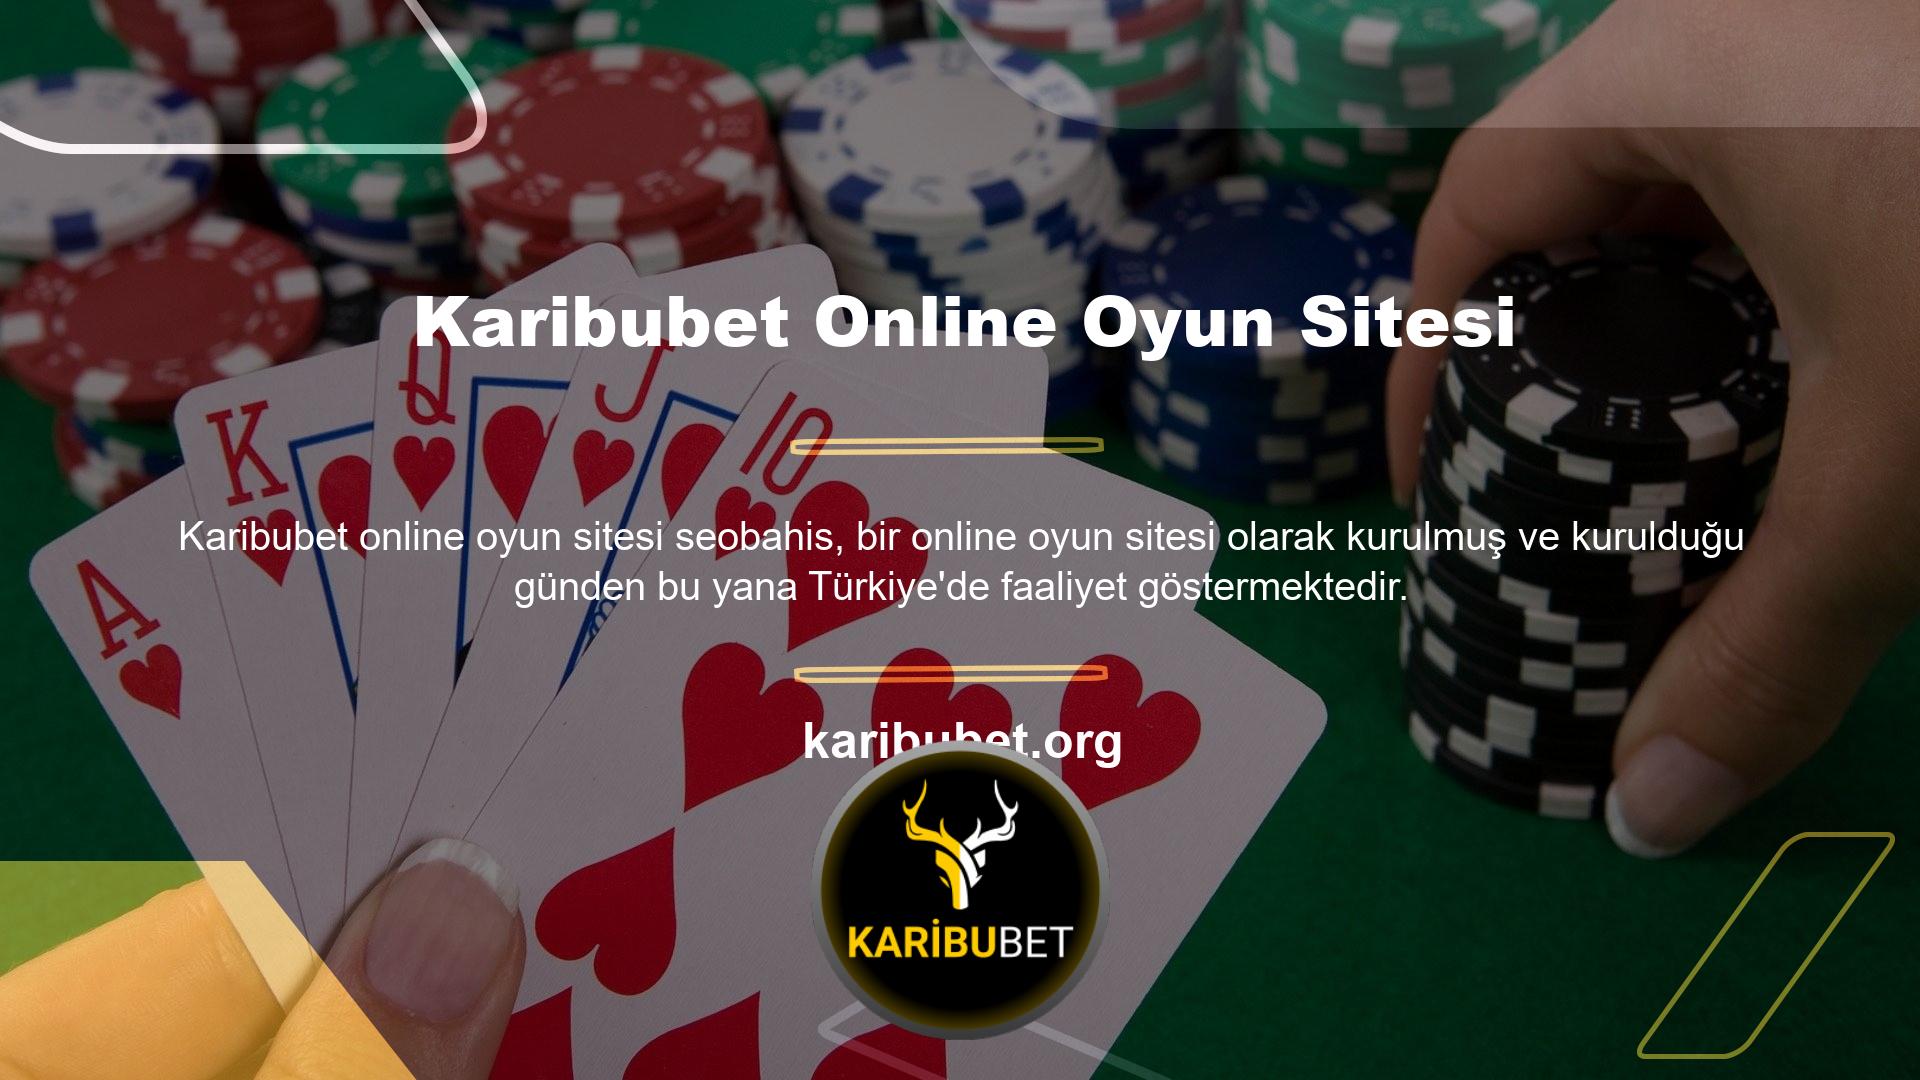 Çevrimiçi casino web sitesi endüstrisindeki en deneyimli ve kapsamlı web sitesi olduğu söyleniyor